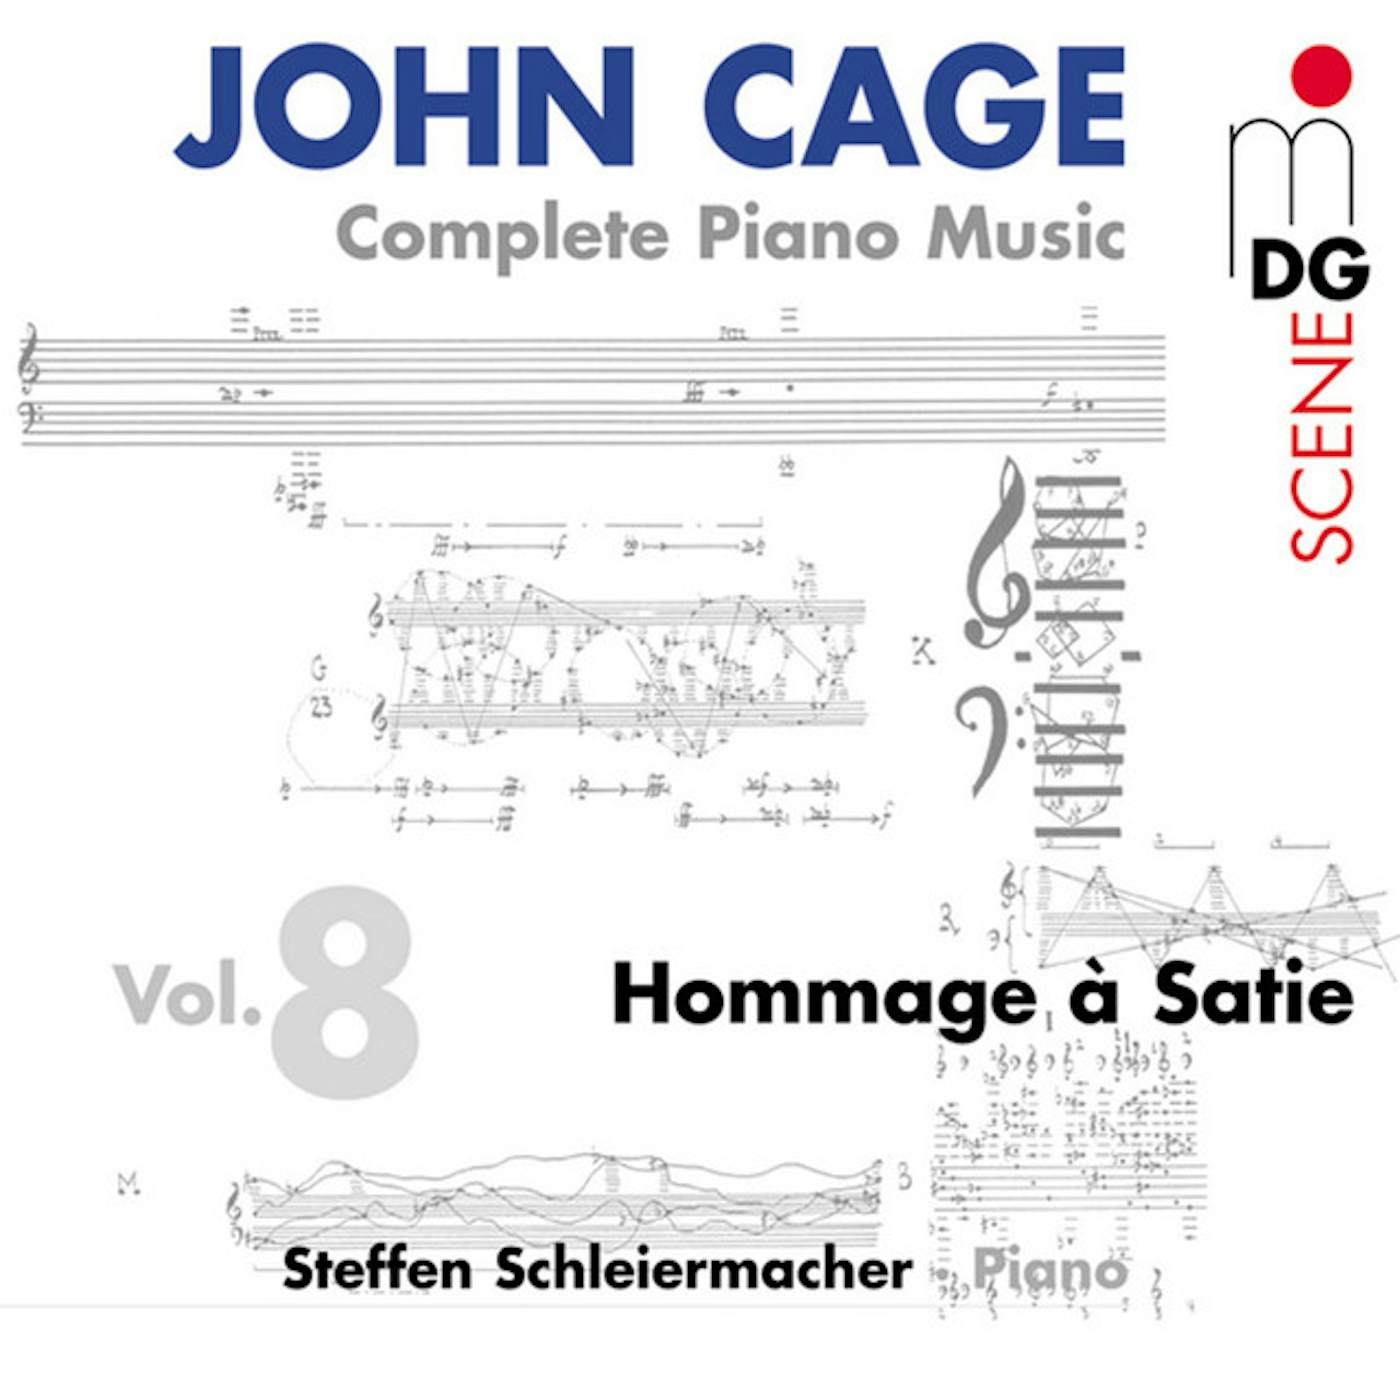 Steffen Schleiermacher PIANO MUSIC 8 CD